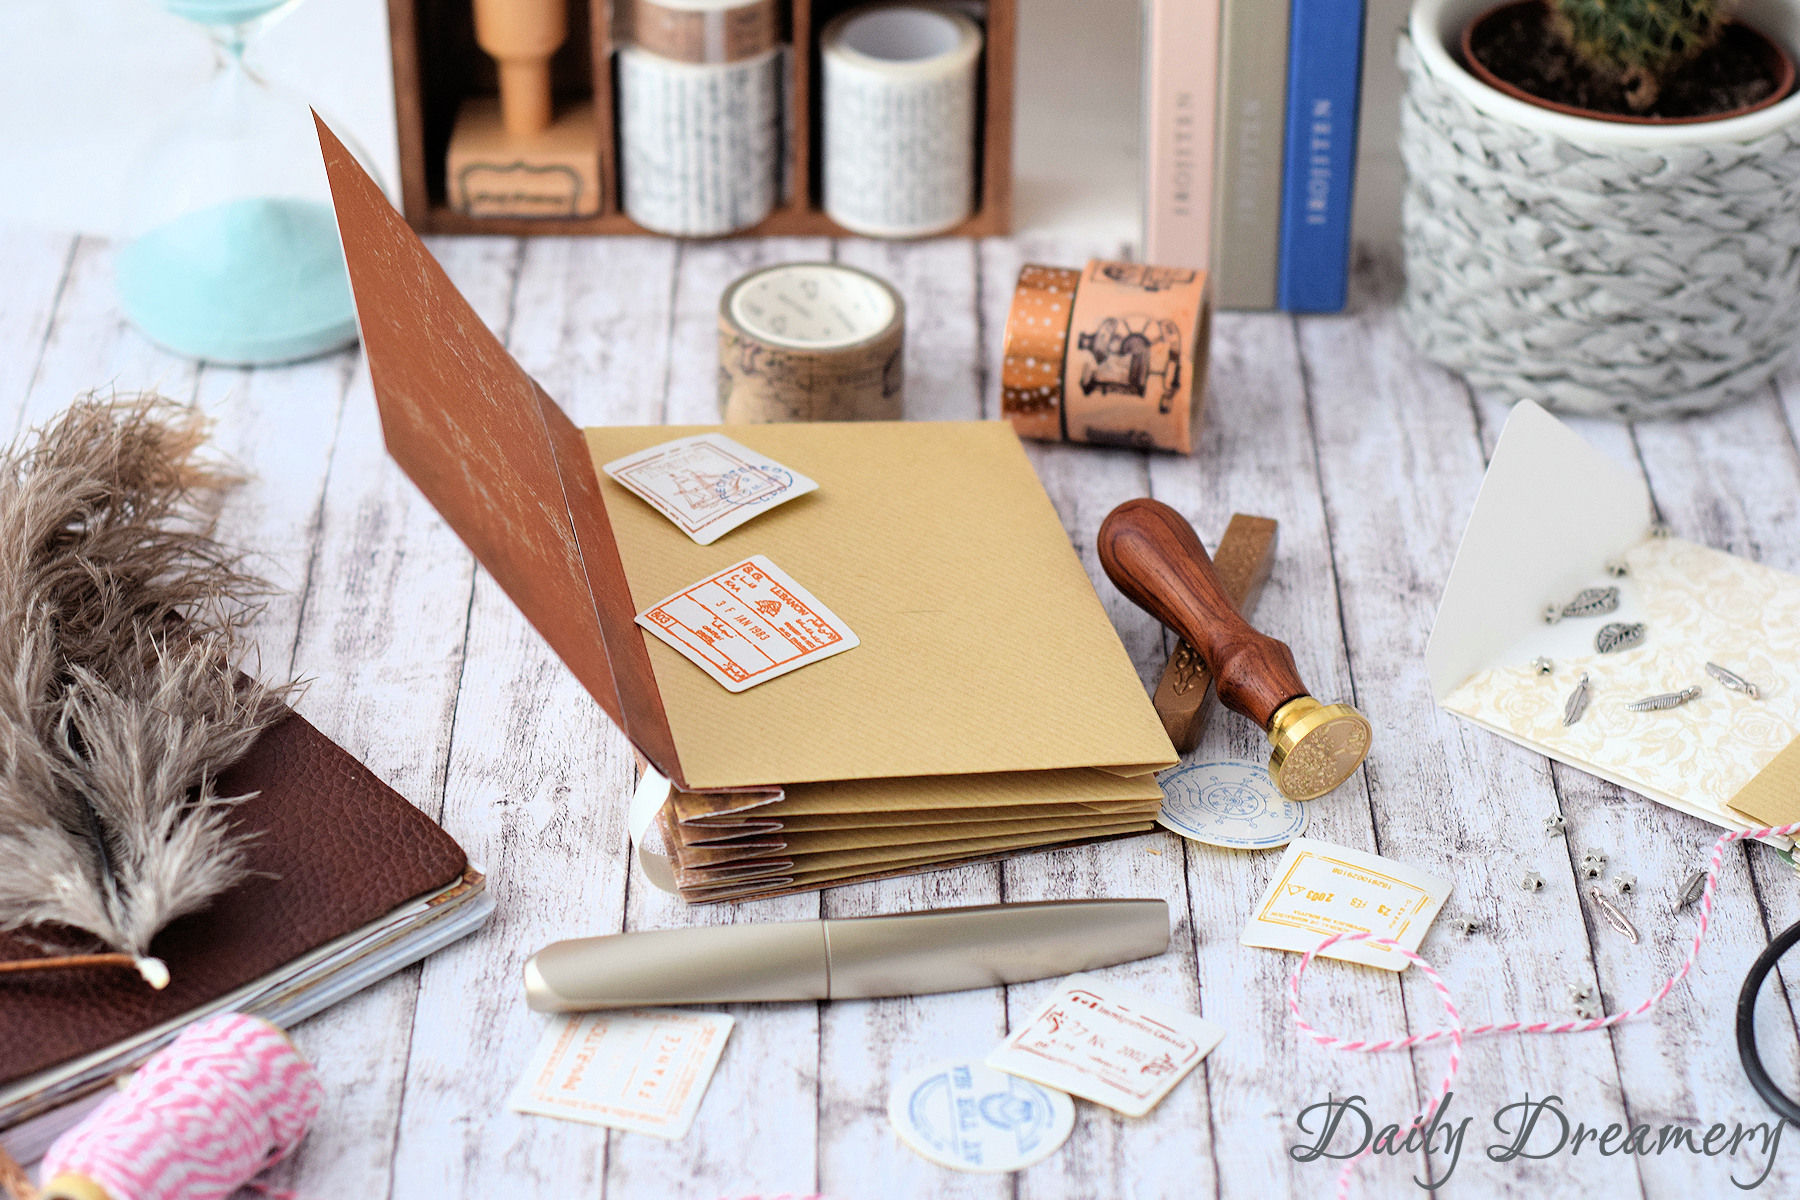 DIY Anleitung für eine Scrapbooking Idee: Ein Erinnerungsbuch aus Briefumschlägen. Ein kleines Sammelalbum für Souvenirs oder Bilder und eine tolle Geschenkidee.